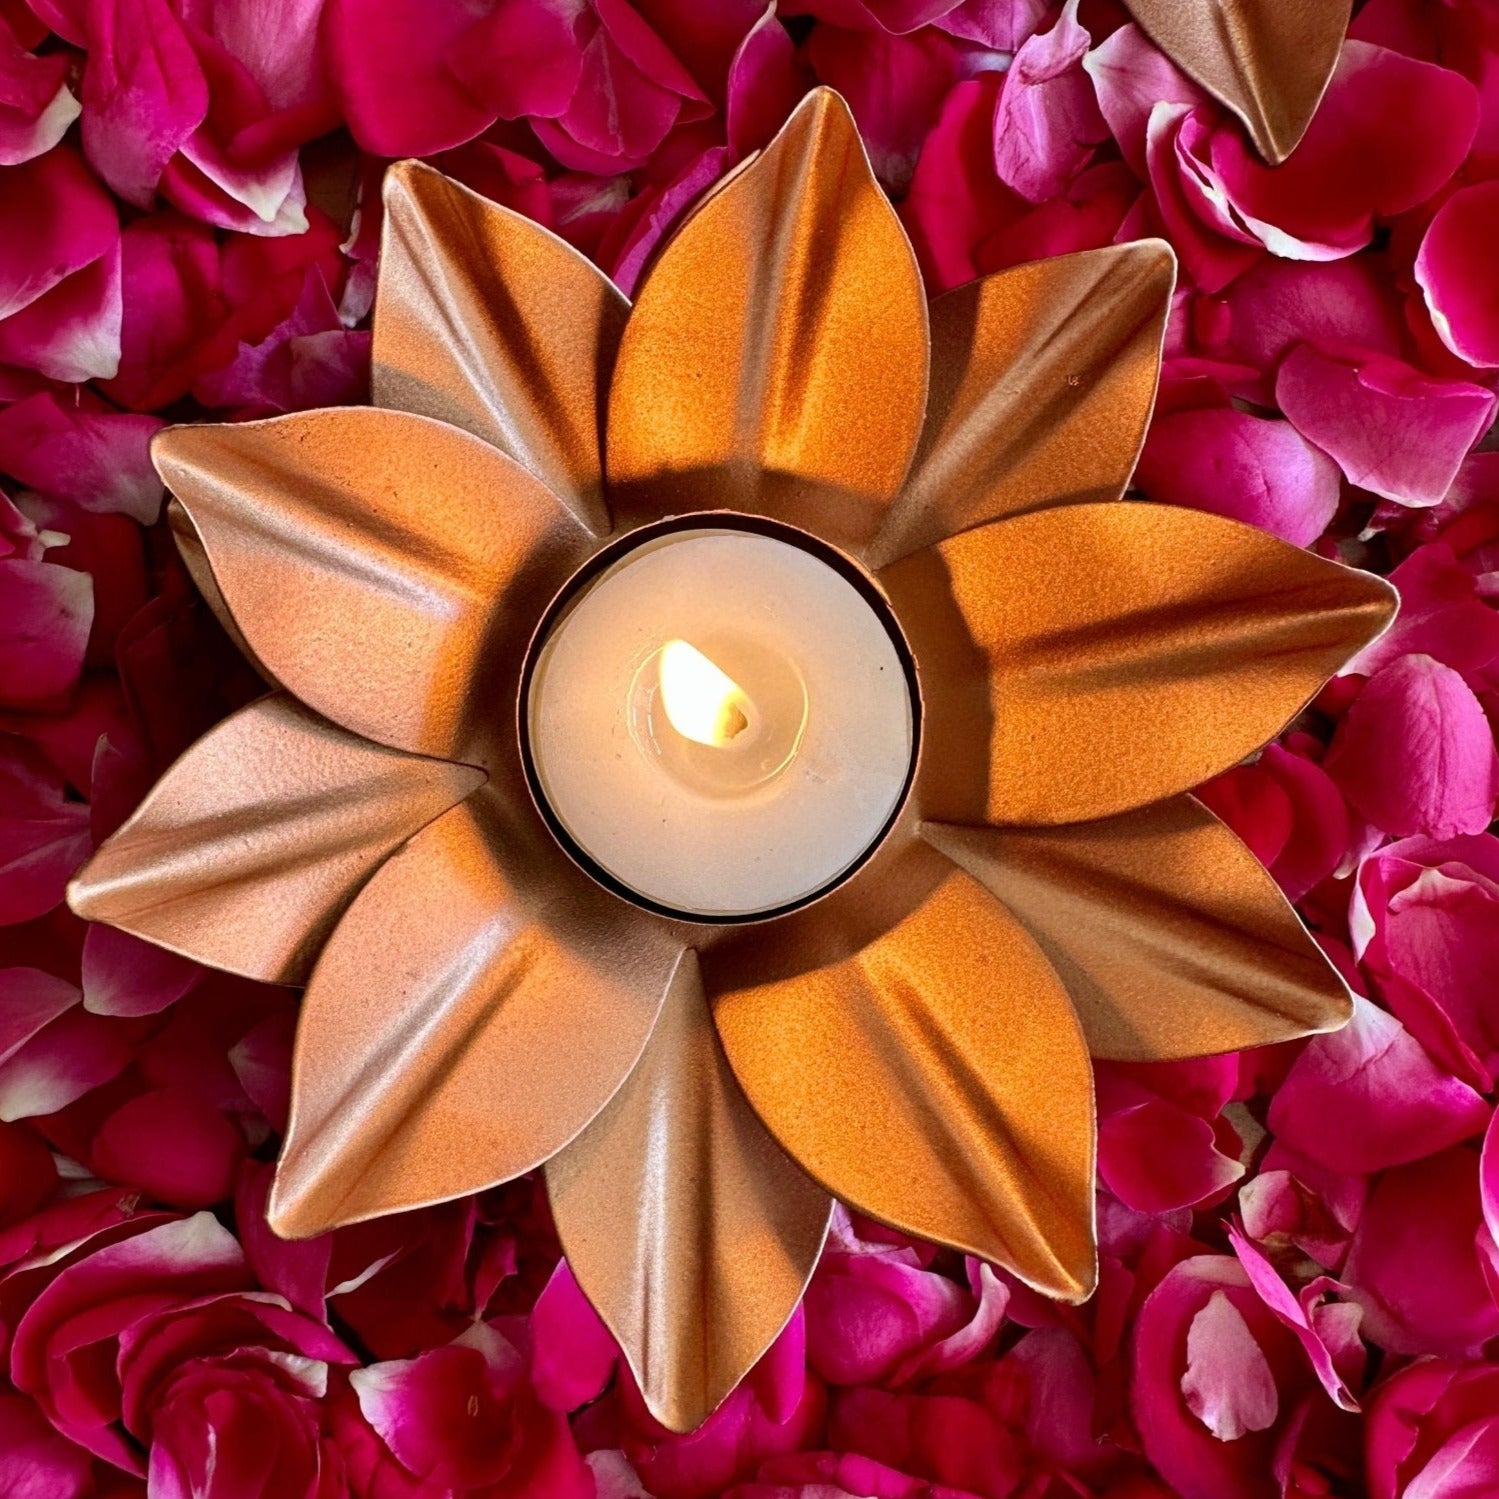 Rose Gold Lotus Tealight Holder Set of 2 - Nurture India